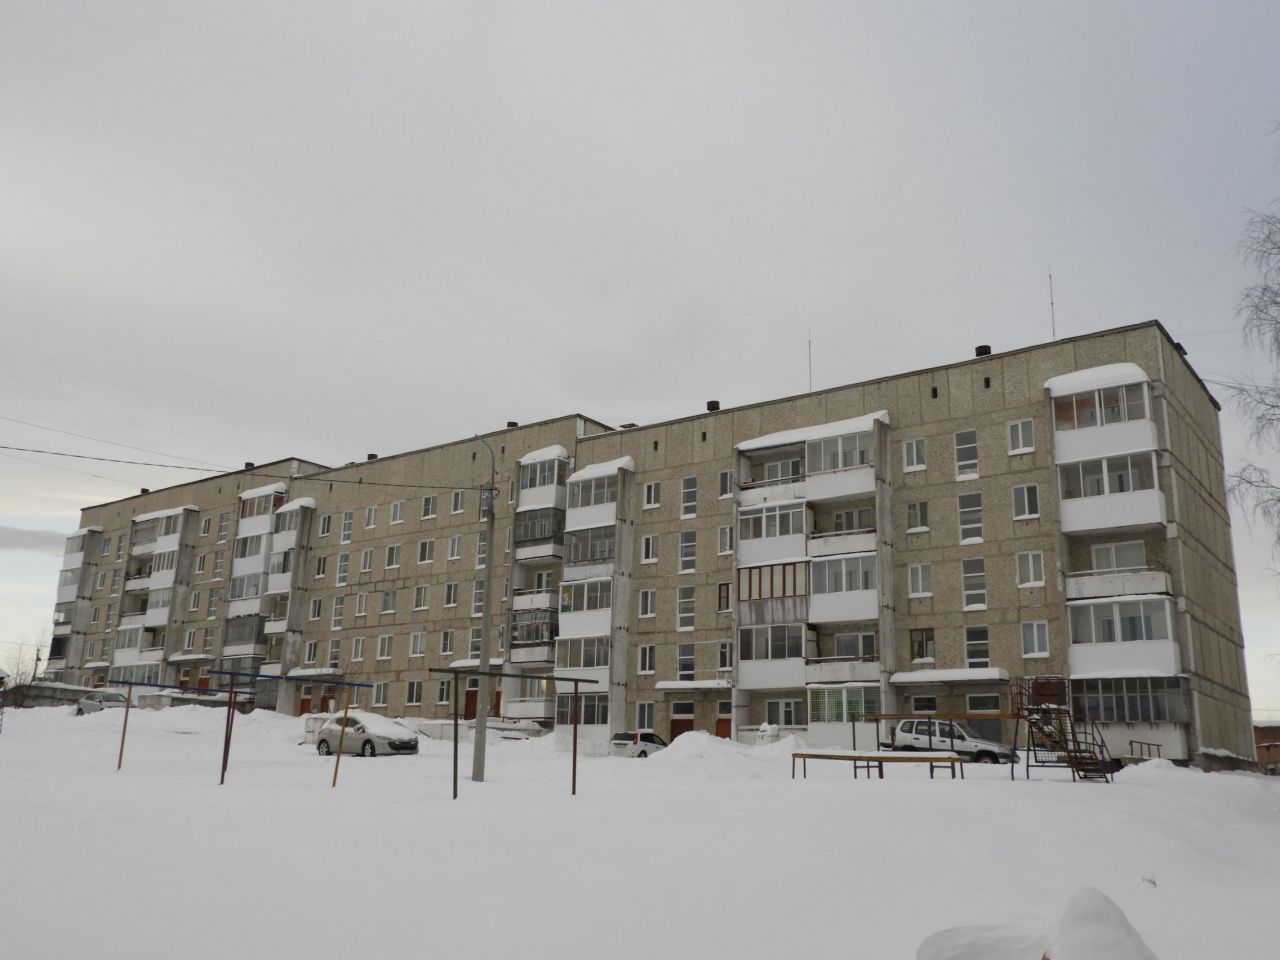 Директор МУП «Ресурс» прокомментировал жалобу замерзающих жильцов дома по улице Трудовой